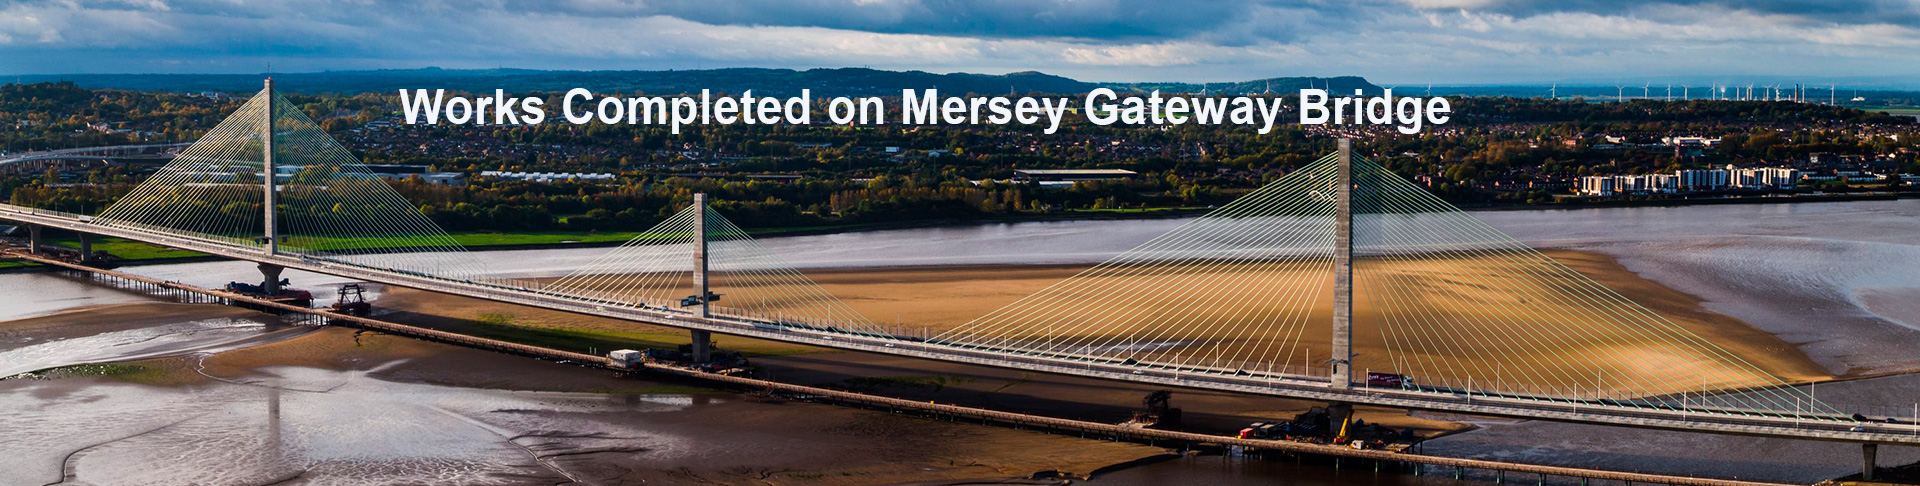 Works Completed on Mersey Gateway Bridge